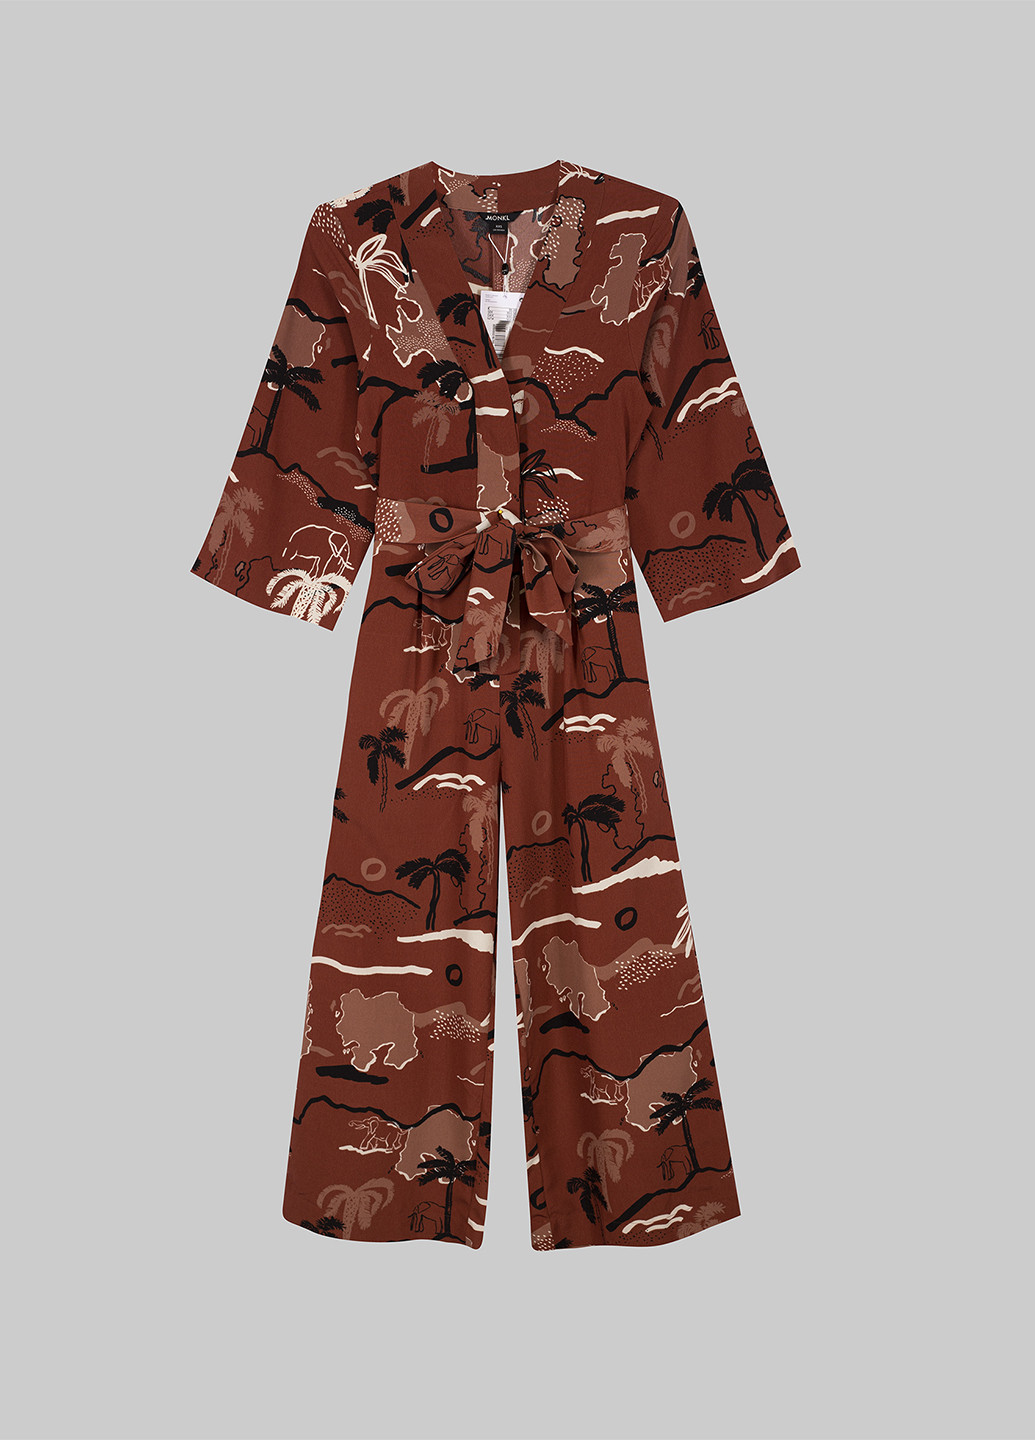 Комбинезон Monki комбинезон-брюки рисунок коричневый кэжуал полиэстер